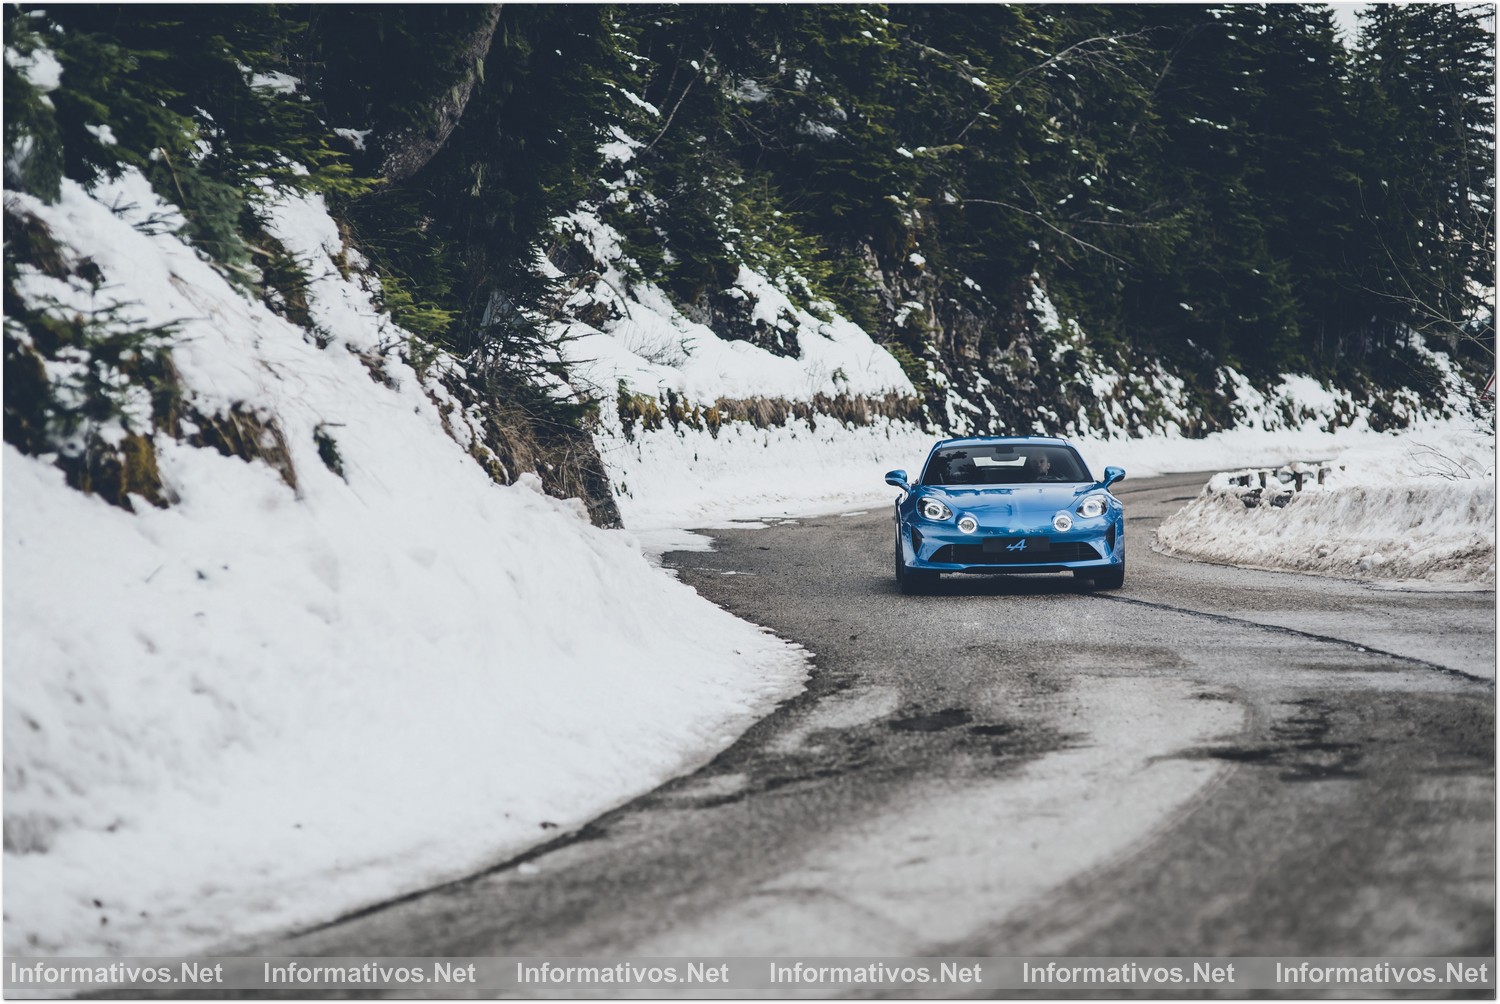 Vuelve Alpine con un deportivo ágil y compacto: el A110 Première Édition